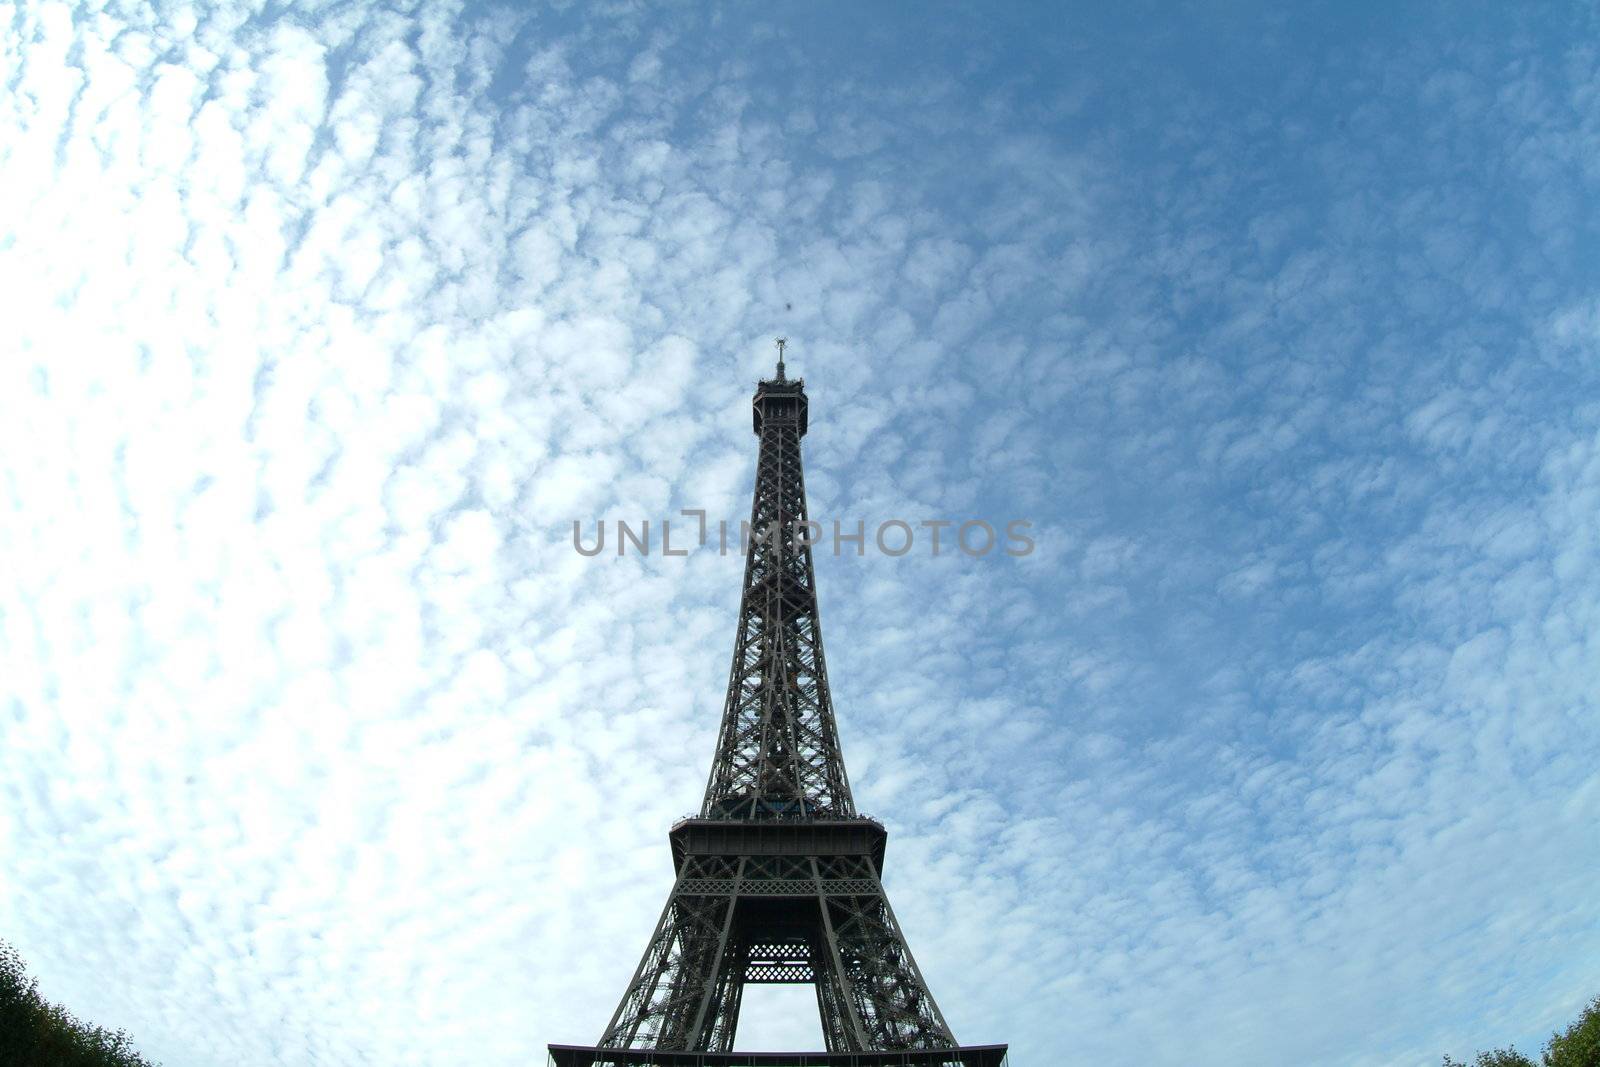 Eiffelturm | eiffel tower by fotofritz